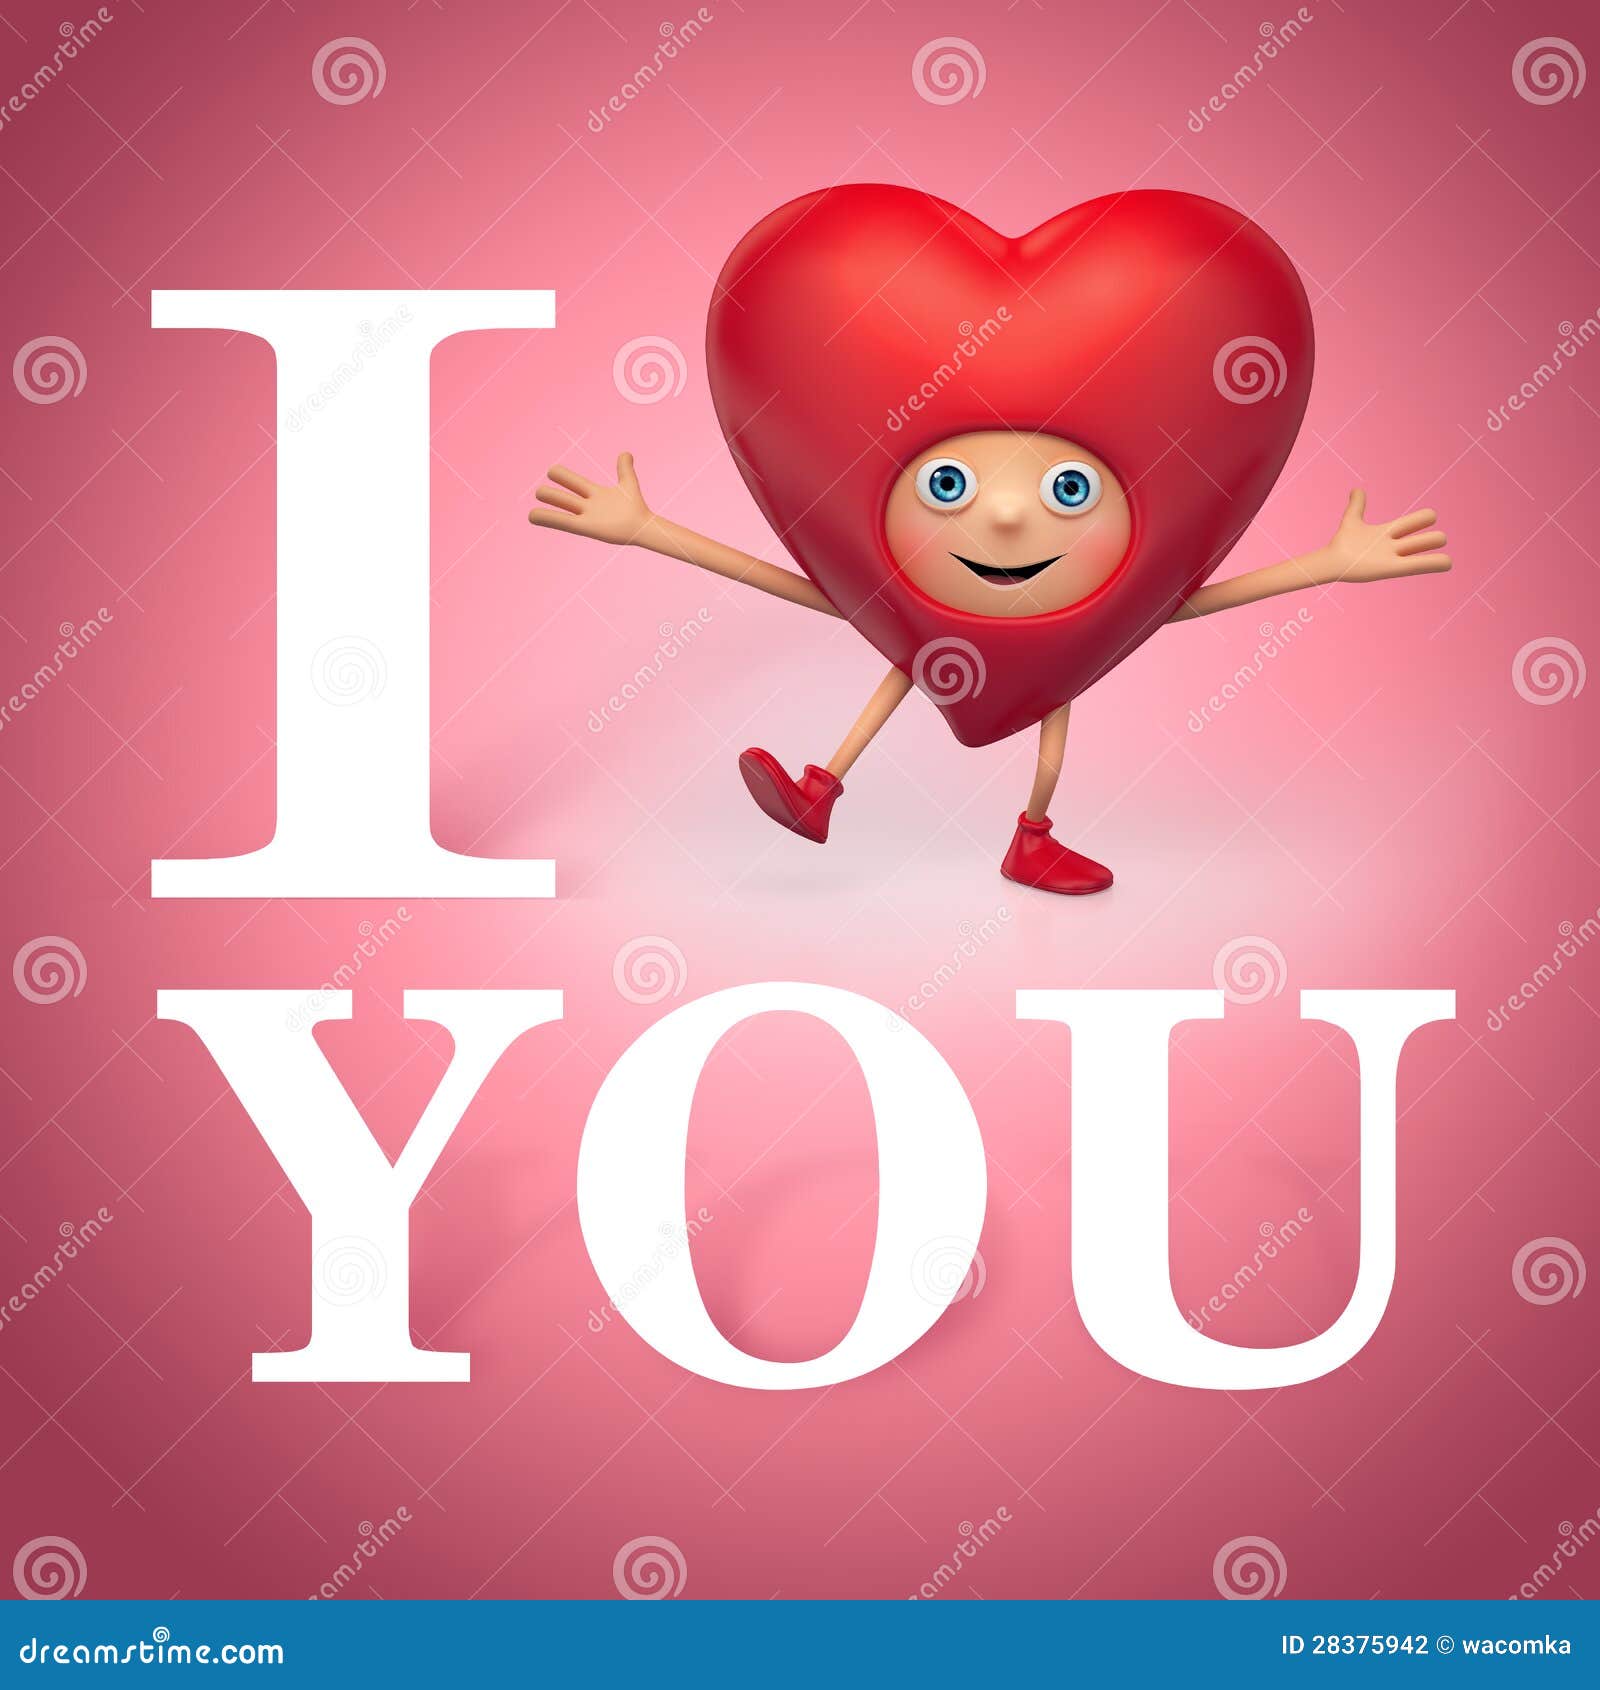 I Want You. I Love You. Funny Heart Cartoon Stock ...